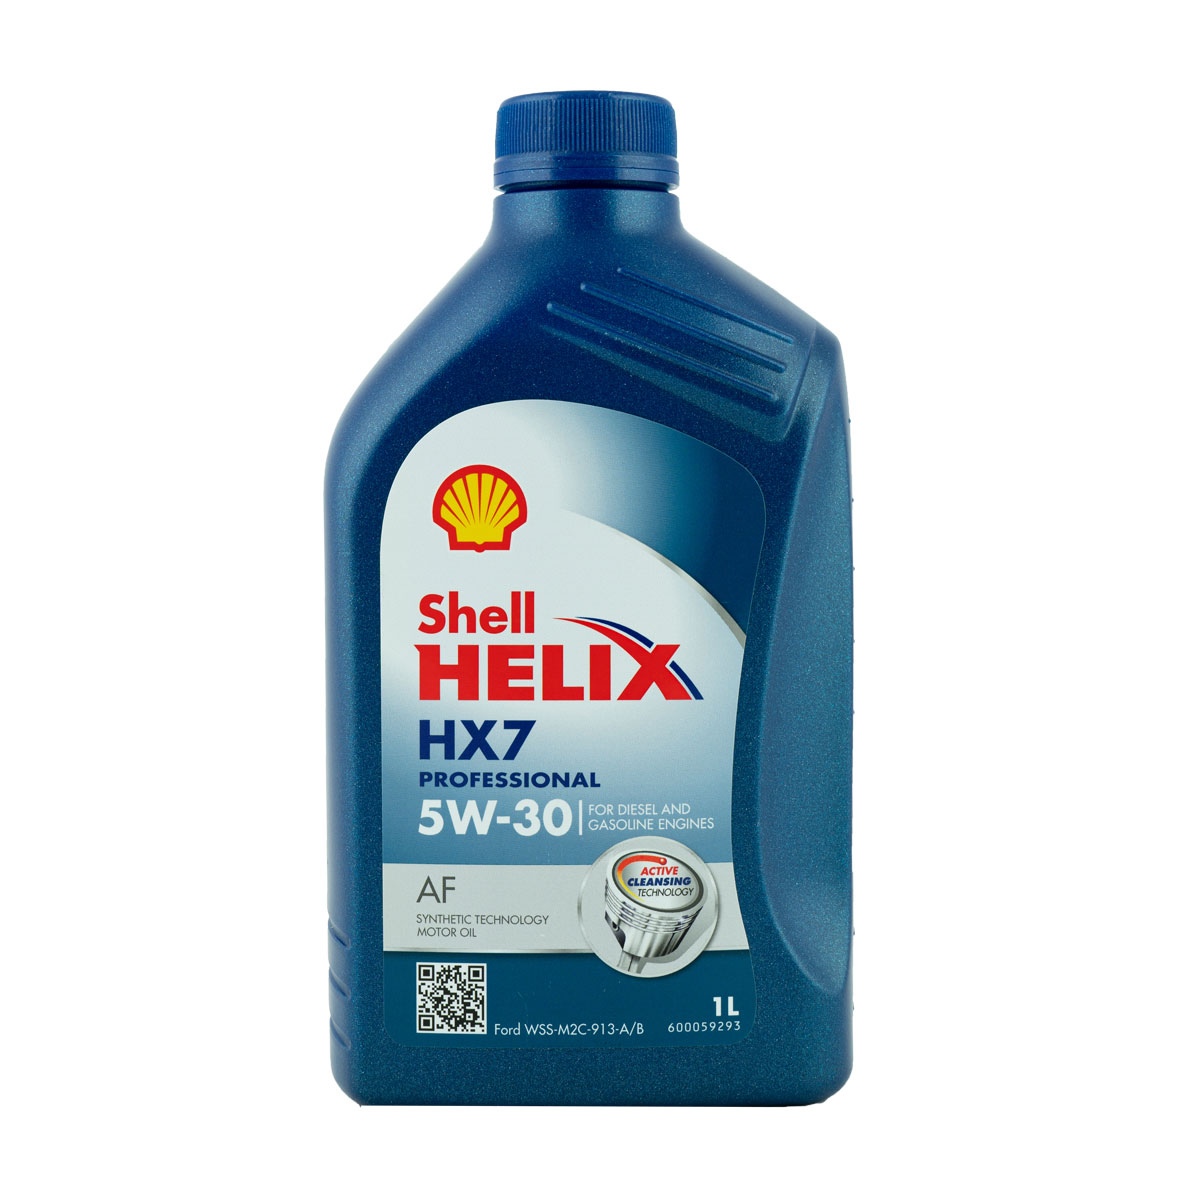 Shell Helix HX7 Professional AF 5W-30 Motoröl, 1l